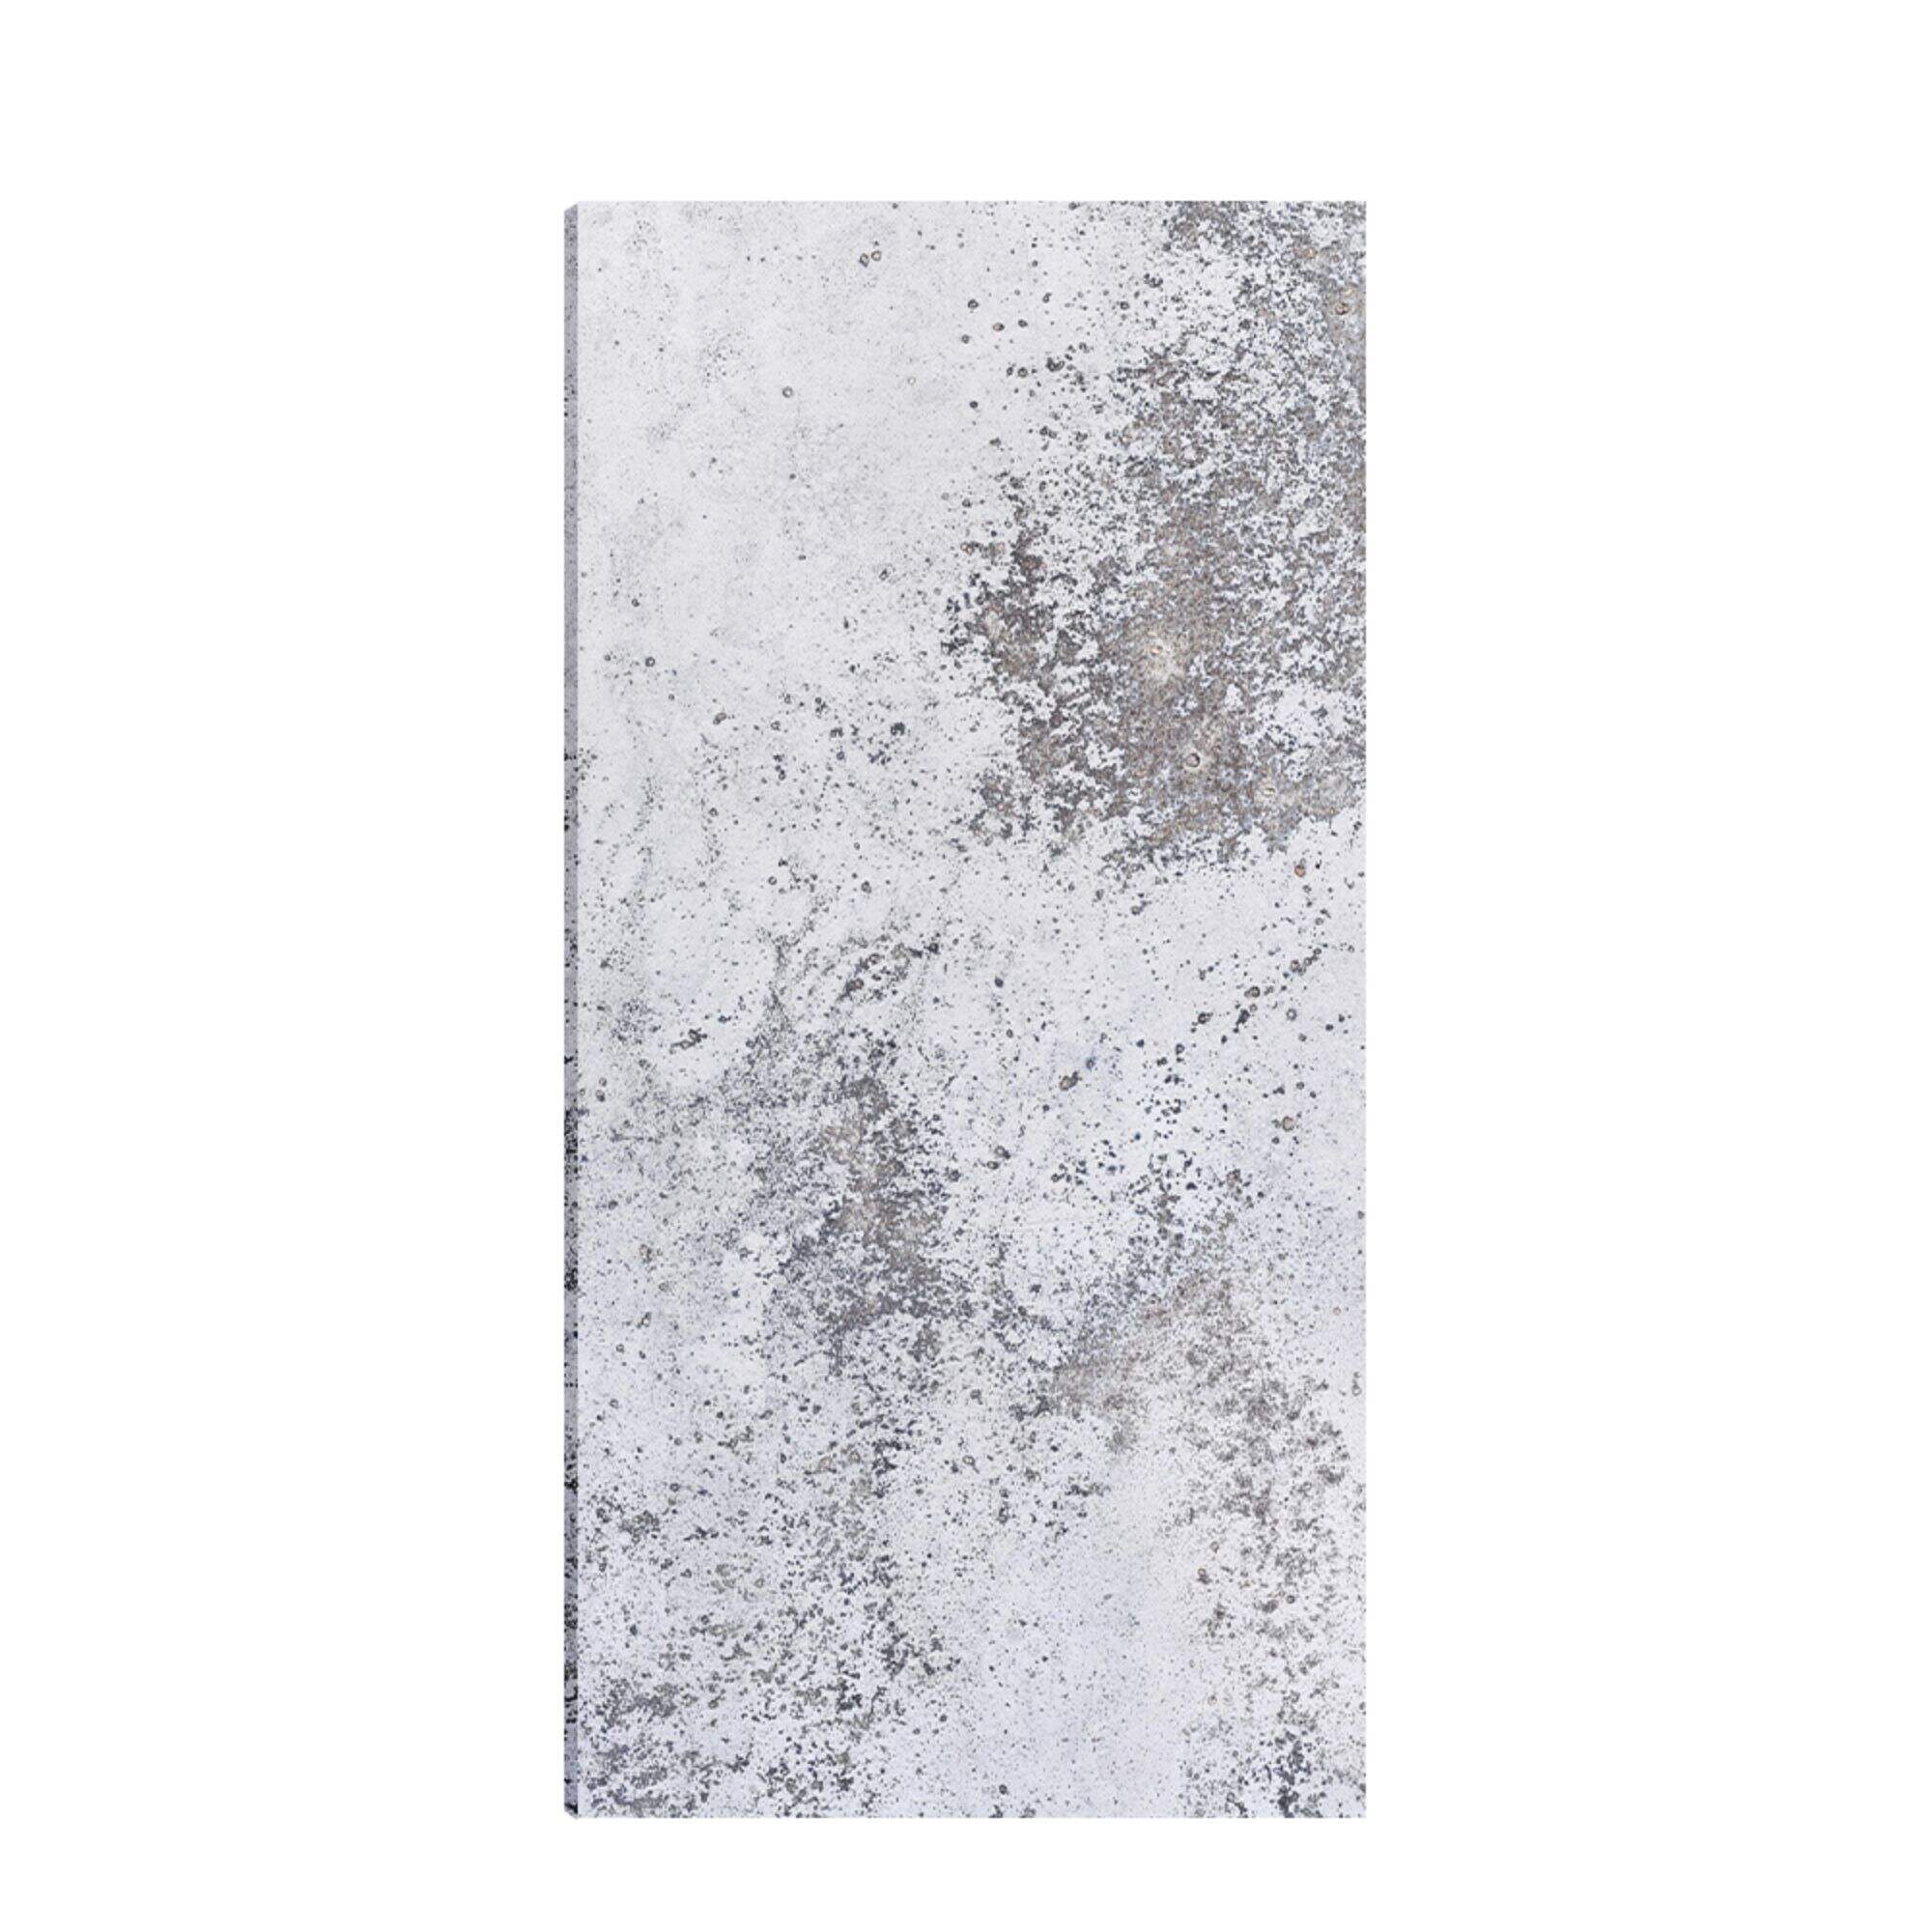 Mount white Gilt Sandstone Cement Board